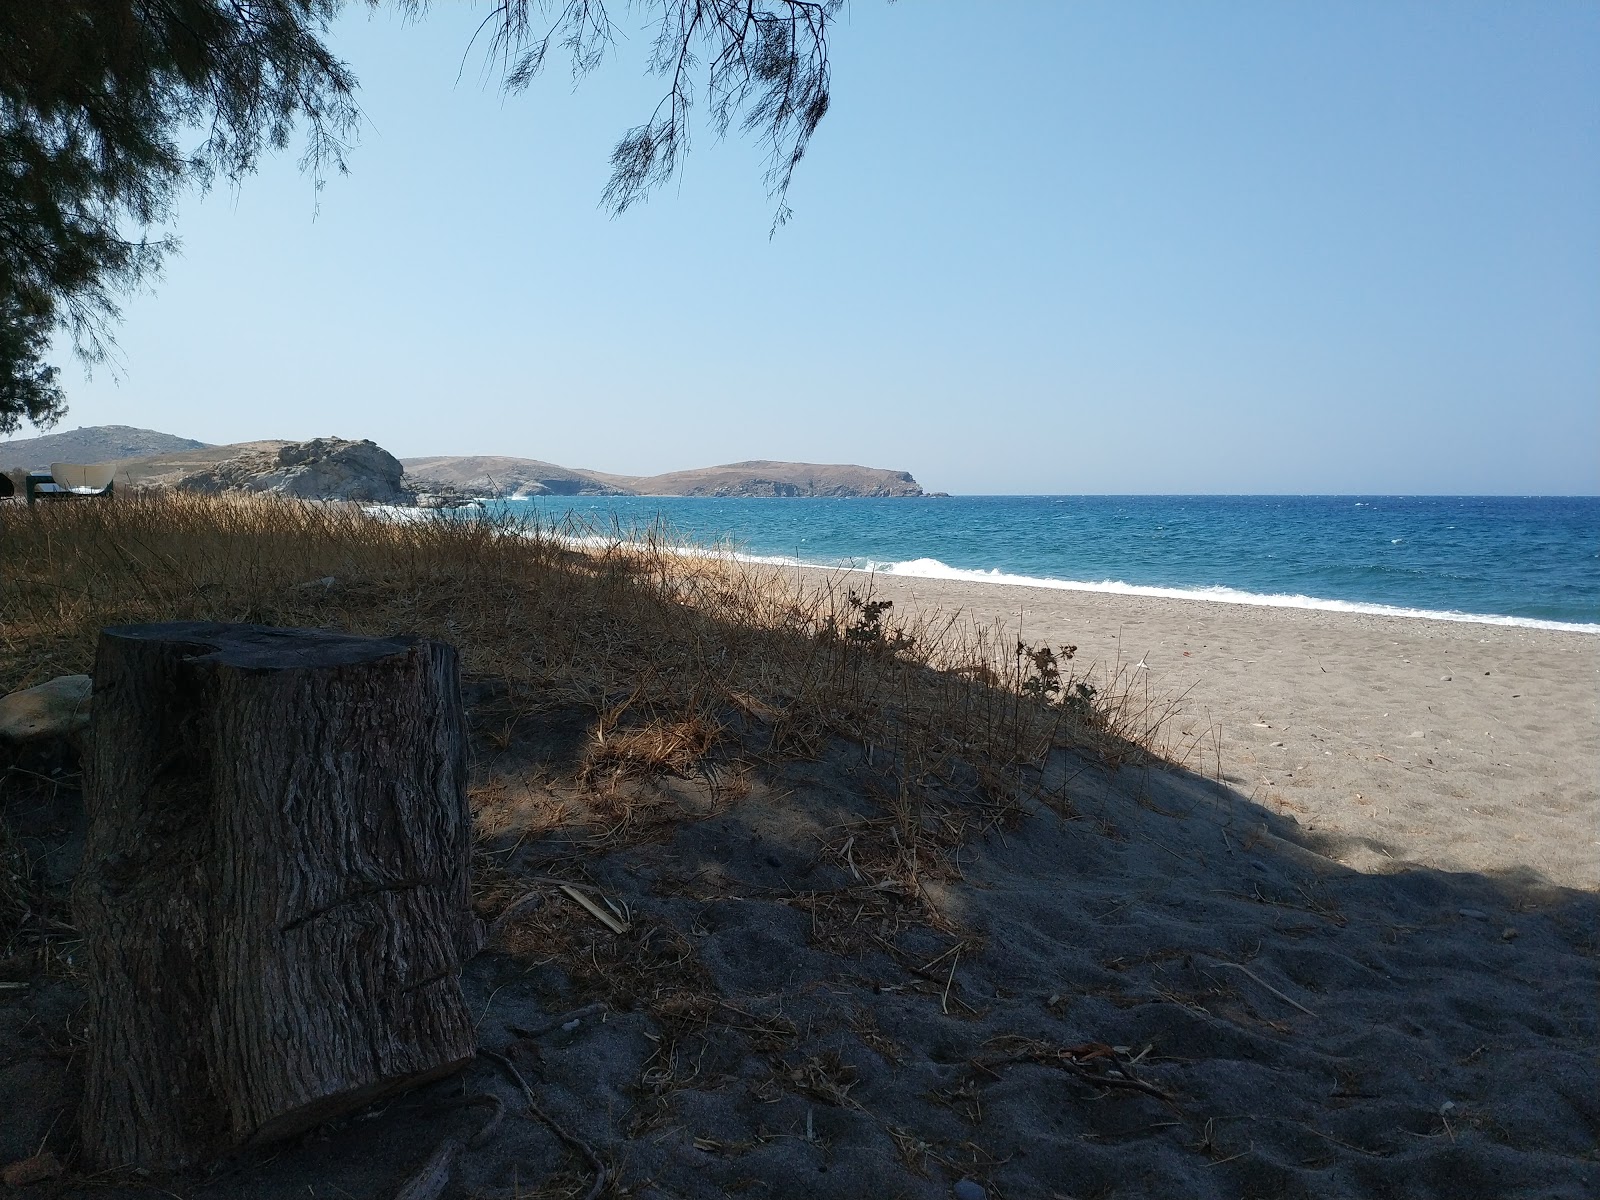 Photo of Faneromeni beach and its beautiful scenery